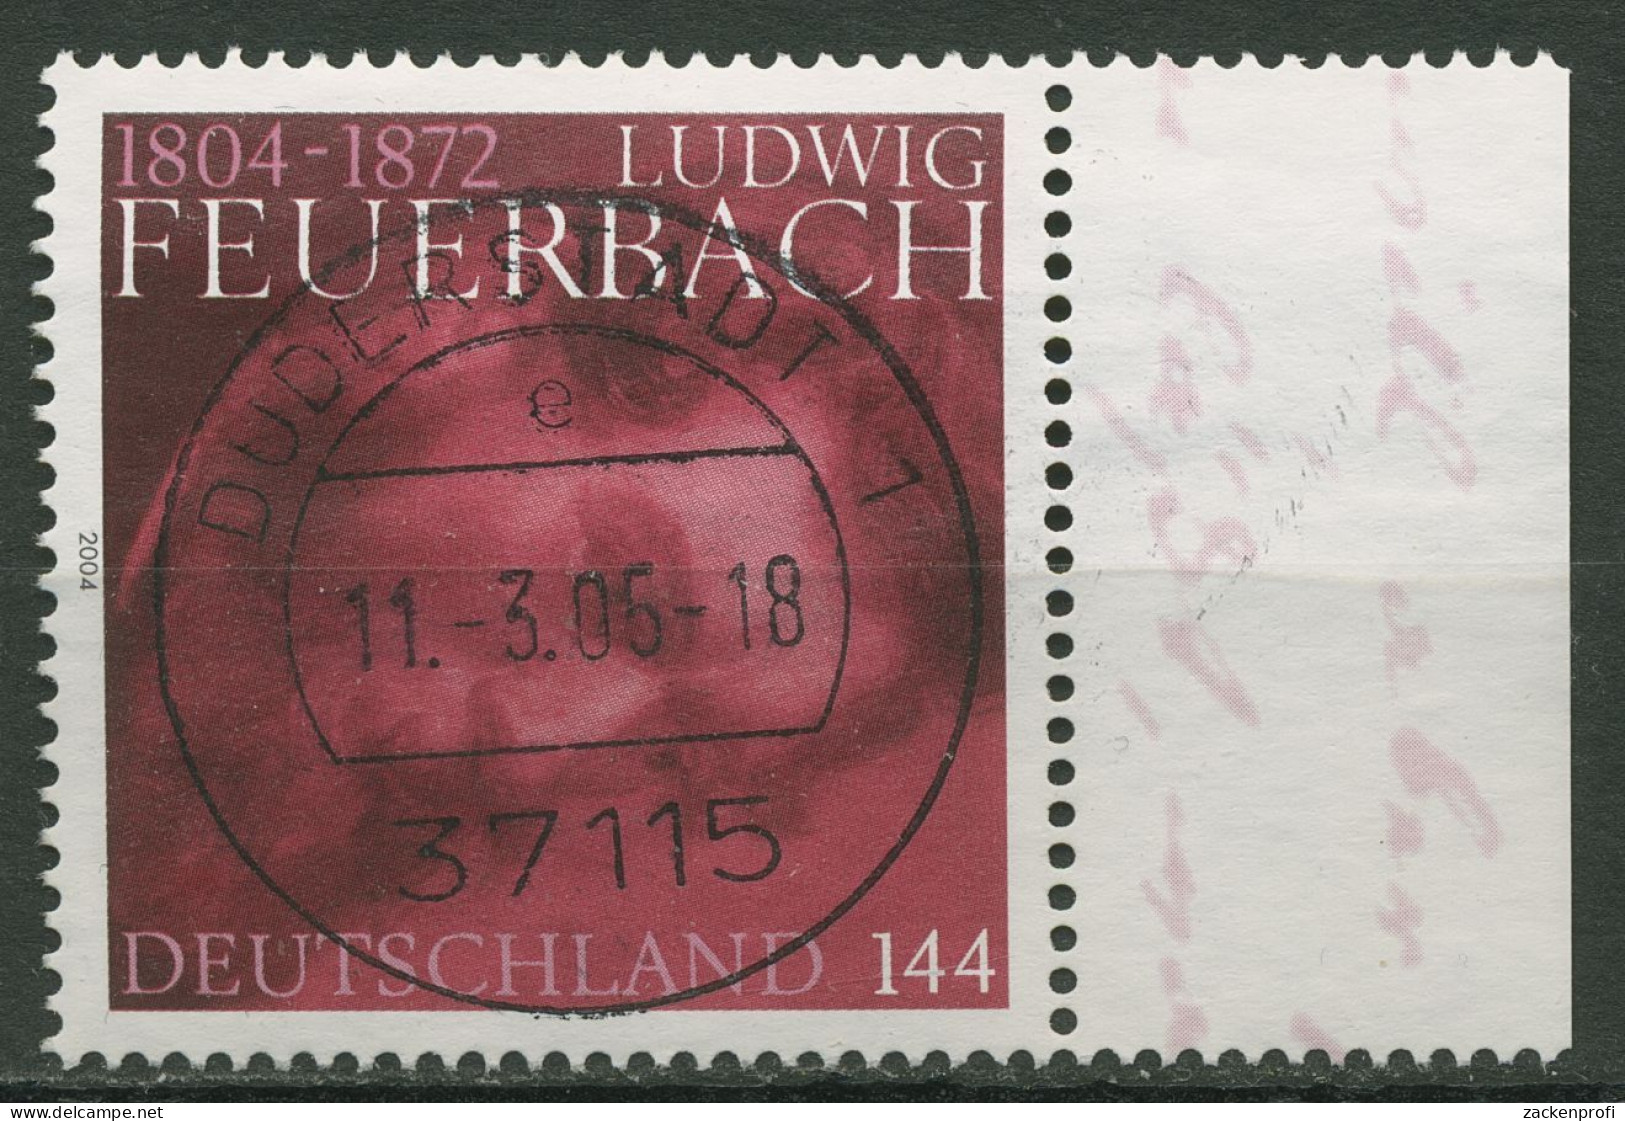 Bund 2004 Philosoph Ludwig Feuerbach 2411 Mit TOP-Stempel - Used Stamps